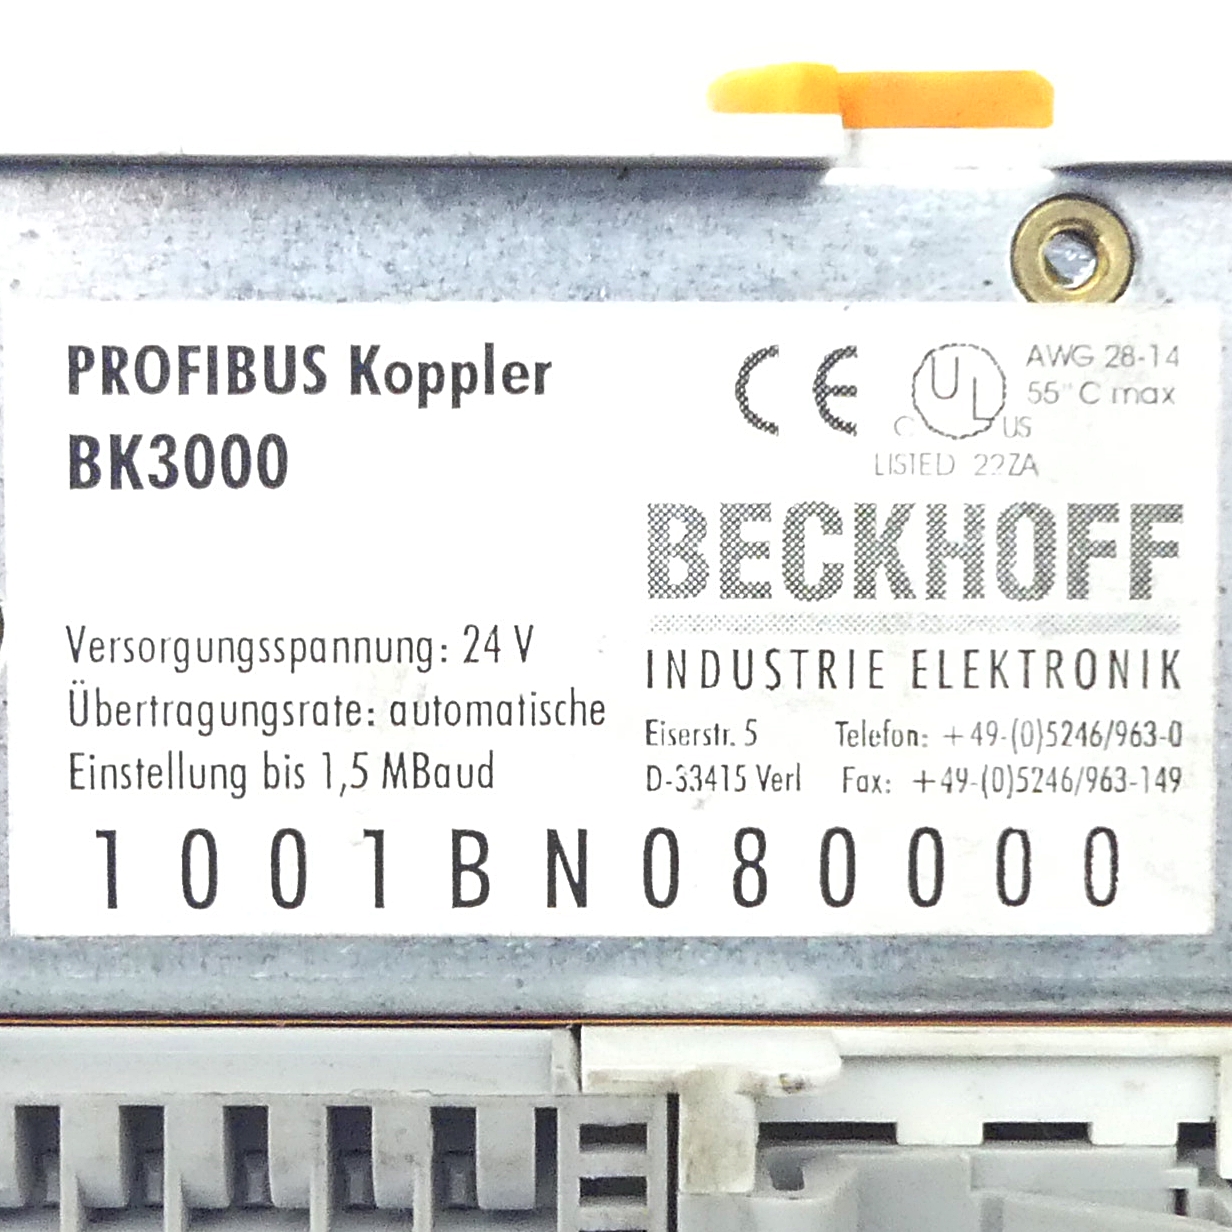 Profibus Koppler BK3000 